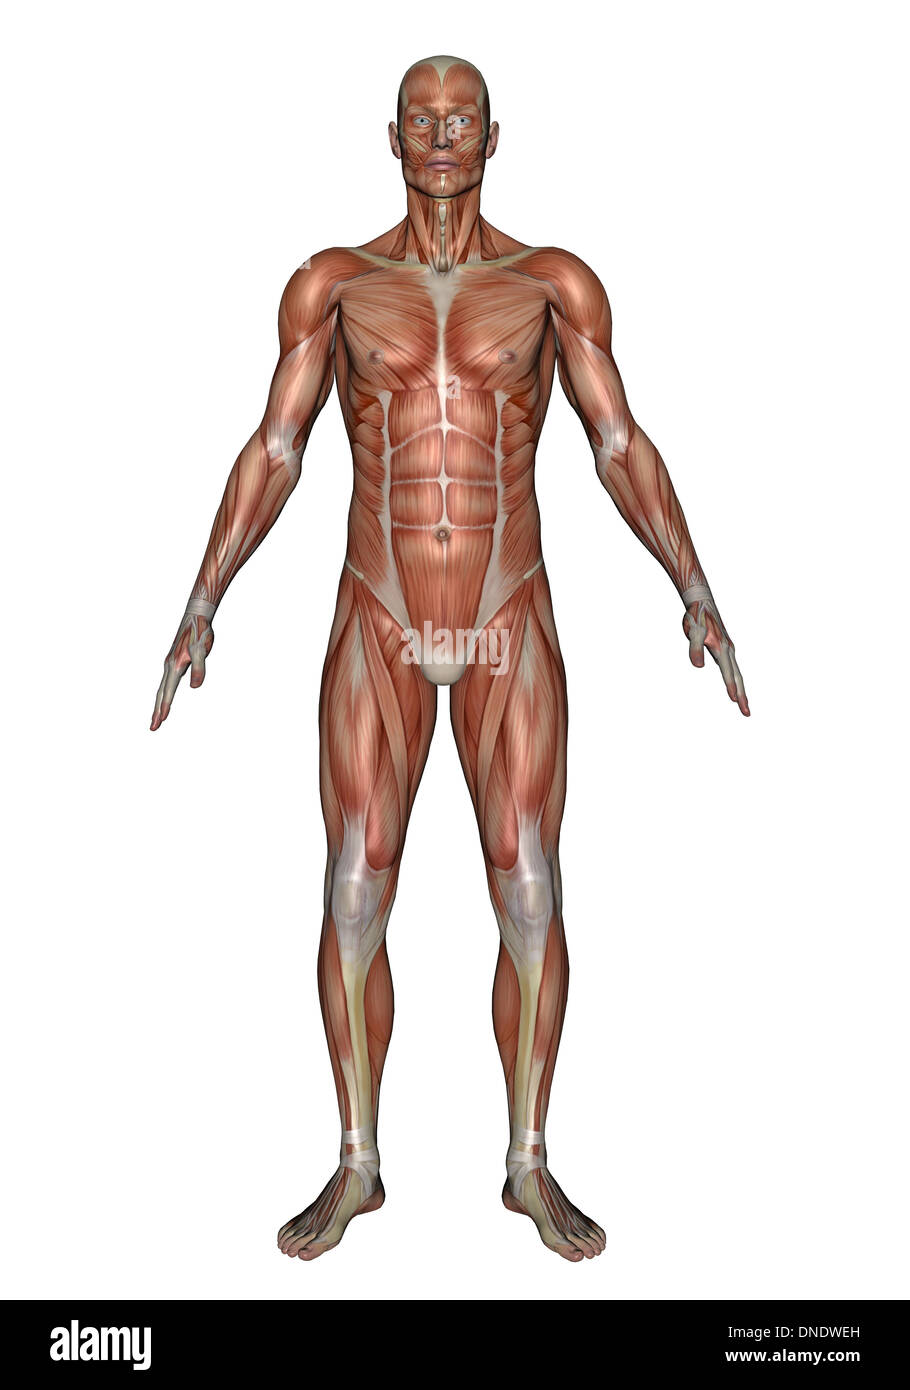 Anatomie des männlichen Muskulatur, Vorderansicht. Stockfoto